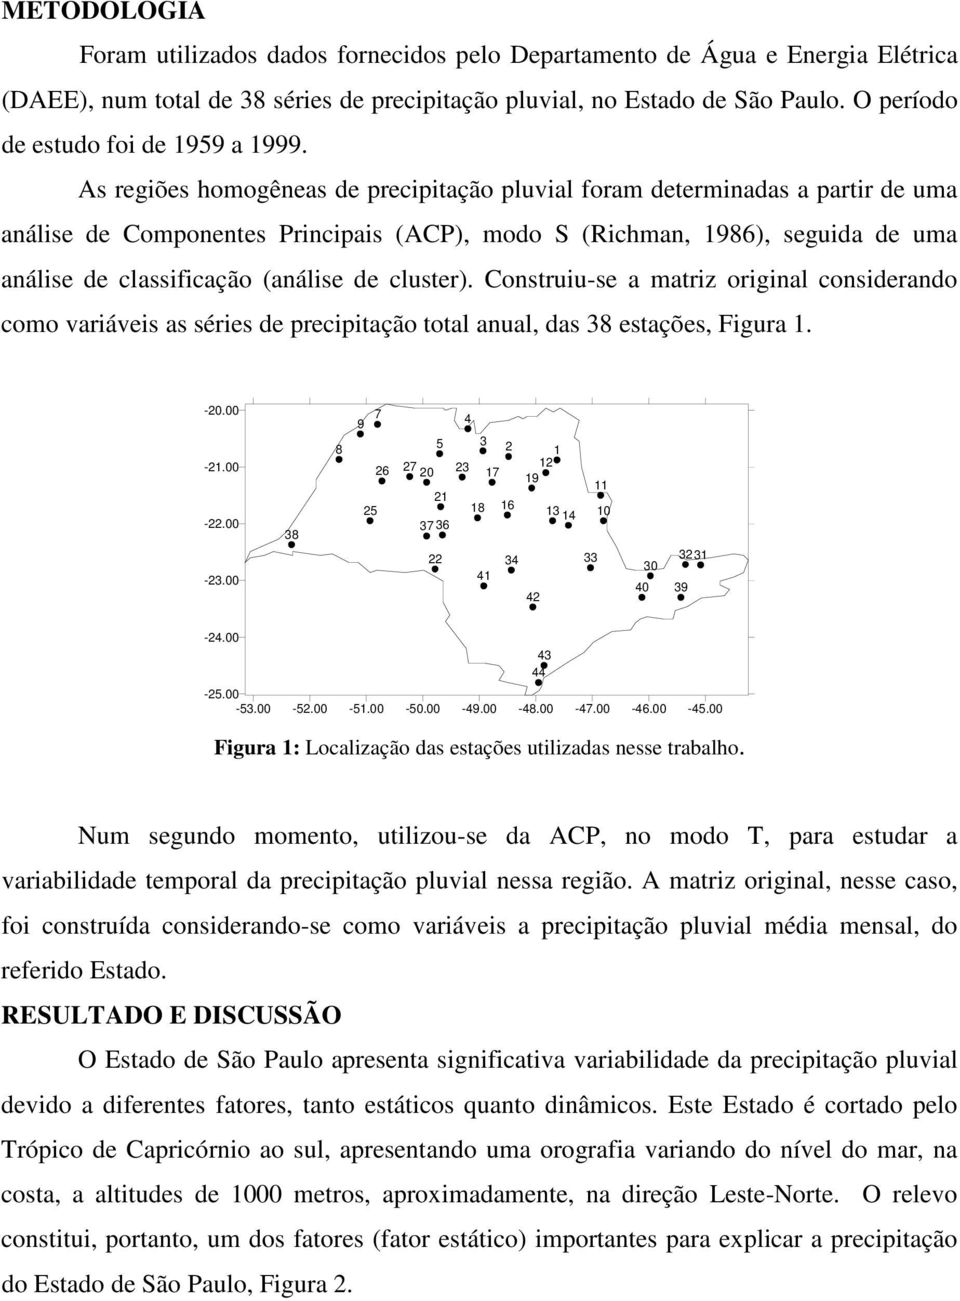 As regiões homogêneas de precipitação pluvial foram determinadas a partir de uma análise de Componentes Principais (ACP), modo S (Richman, 1986), seguida de uma análise de classificação (análise de